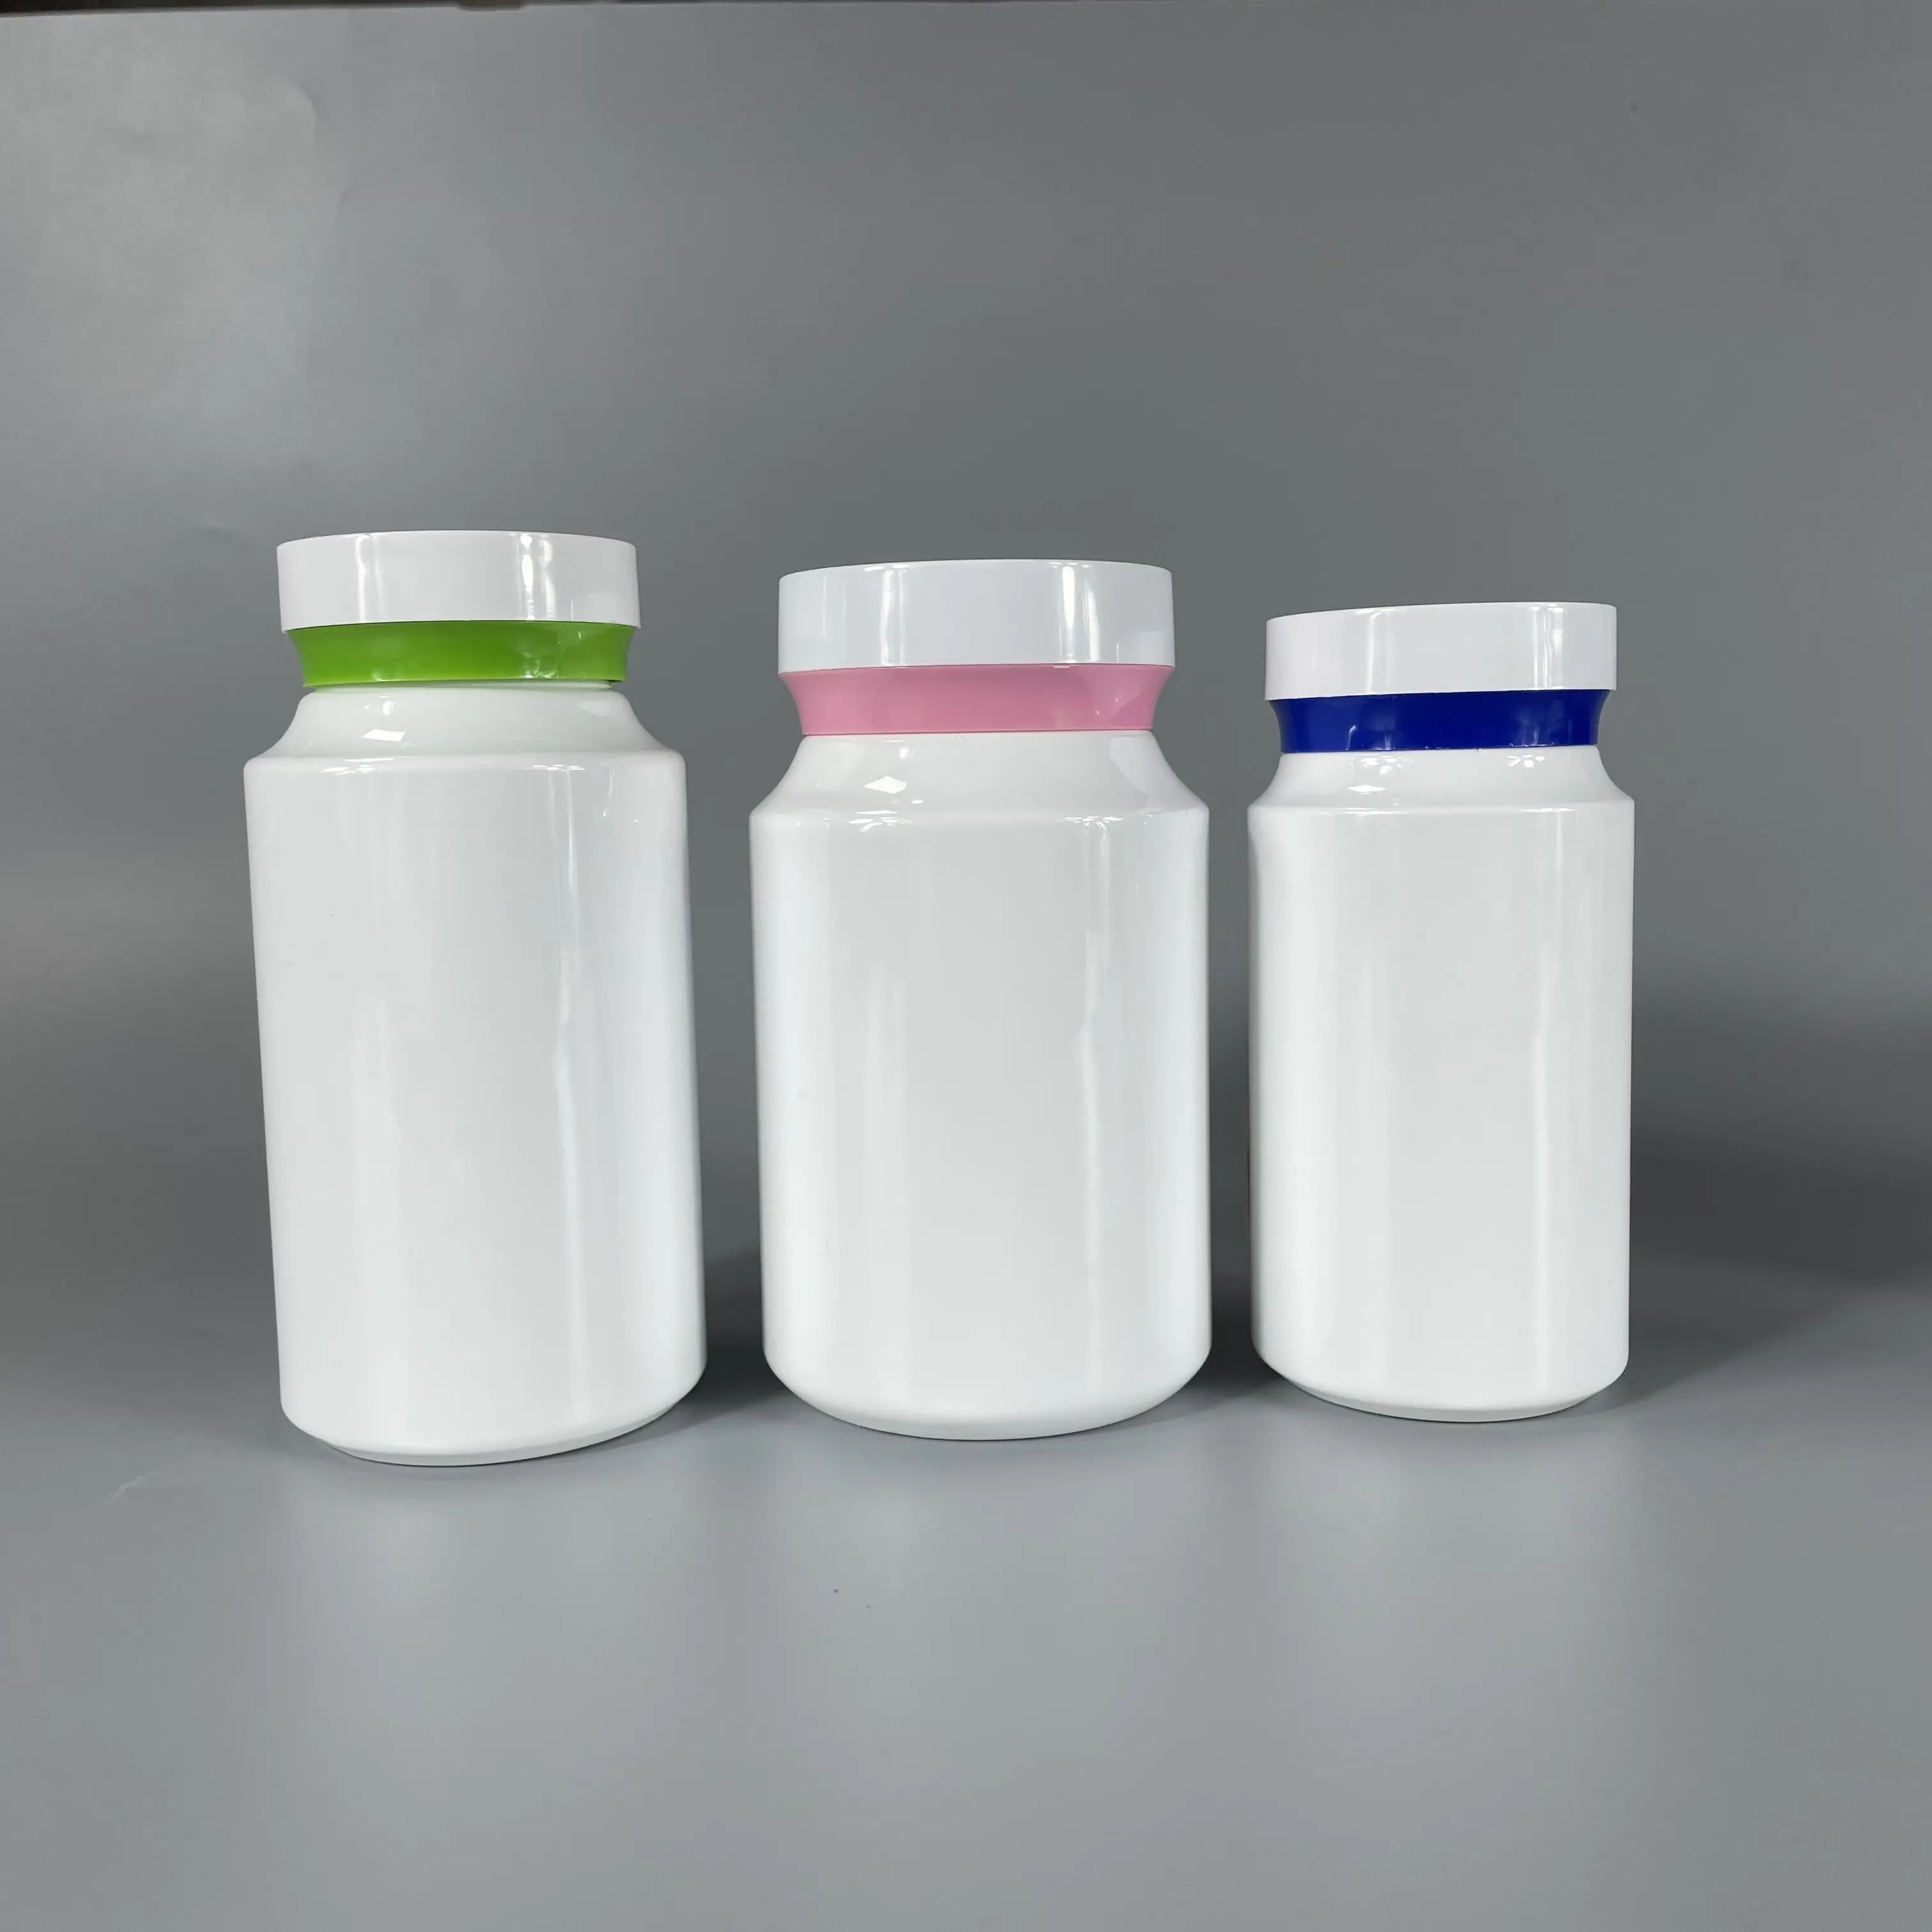 الأكثر مبيعًا سعر تنافسي زجاجات حبوب بلاستيكية ملونة PET PET الشركة المصنعة في الصين